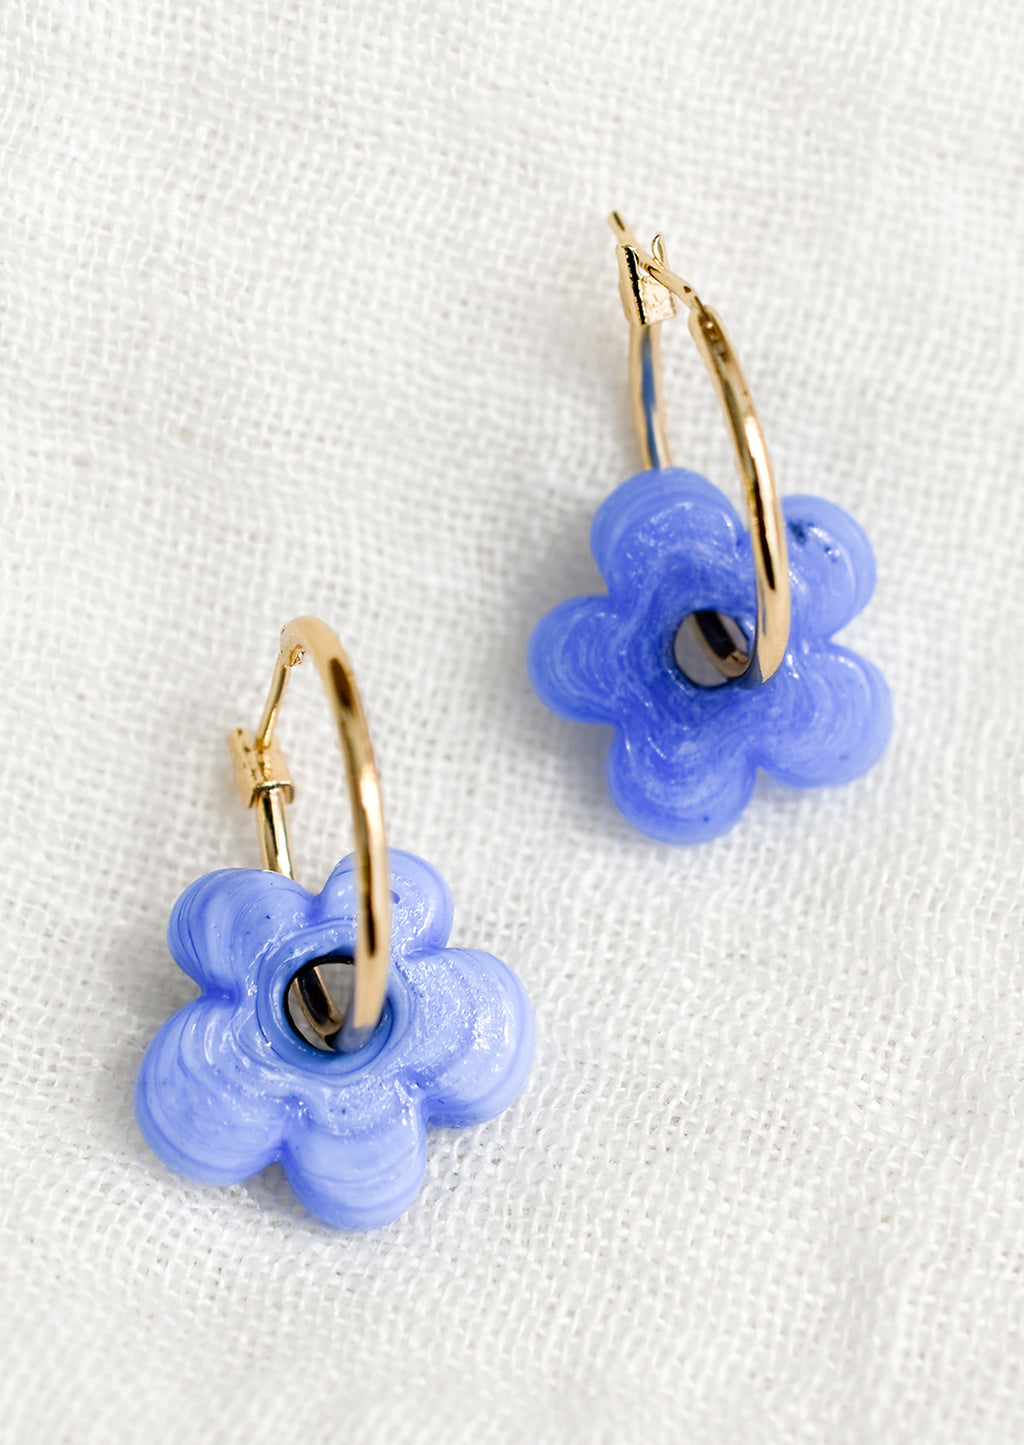 Cornflower: A pair of gold hoop earrings with single periwinkle flower bead.